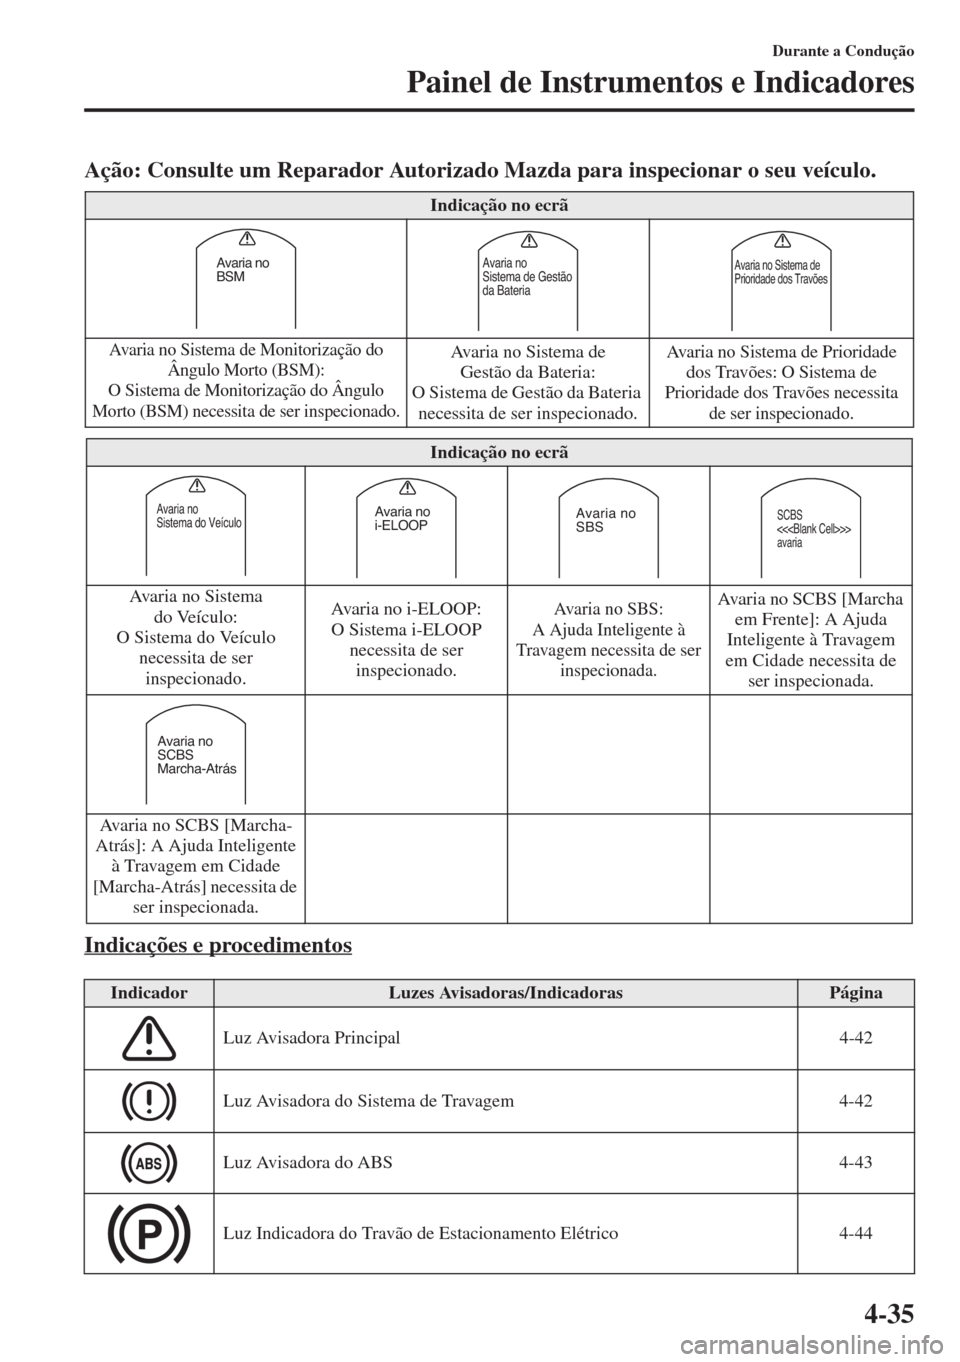 MAZDA MODEL CX-5 2015  Manual do proprietário (in Portuguese) 4-35
Durante a Condução
Painel de Instrumentos e Indicadores
Ação: Consulte um Reparador Autorizado Mazda para inspecionar o seu veículo.
Indicações e procedimentos
Indicação no ecrã
Avaria 